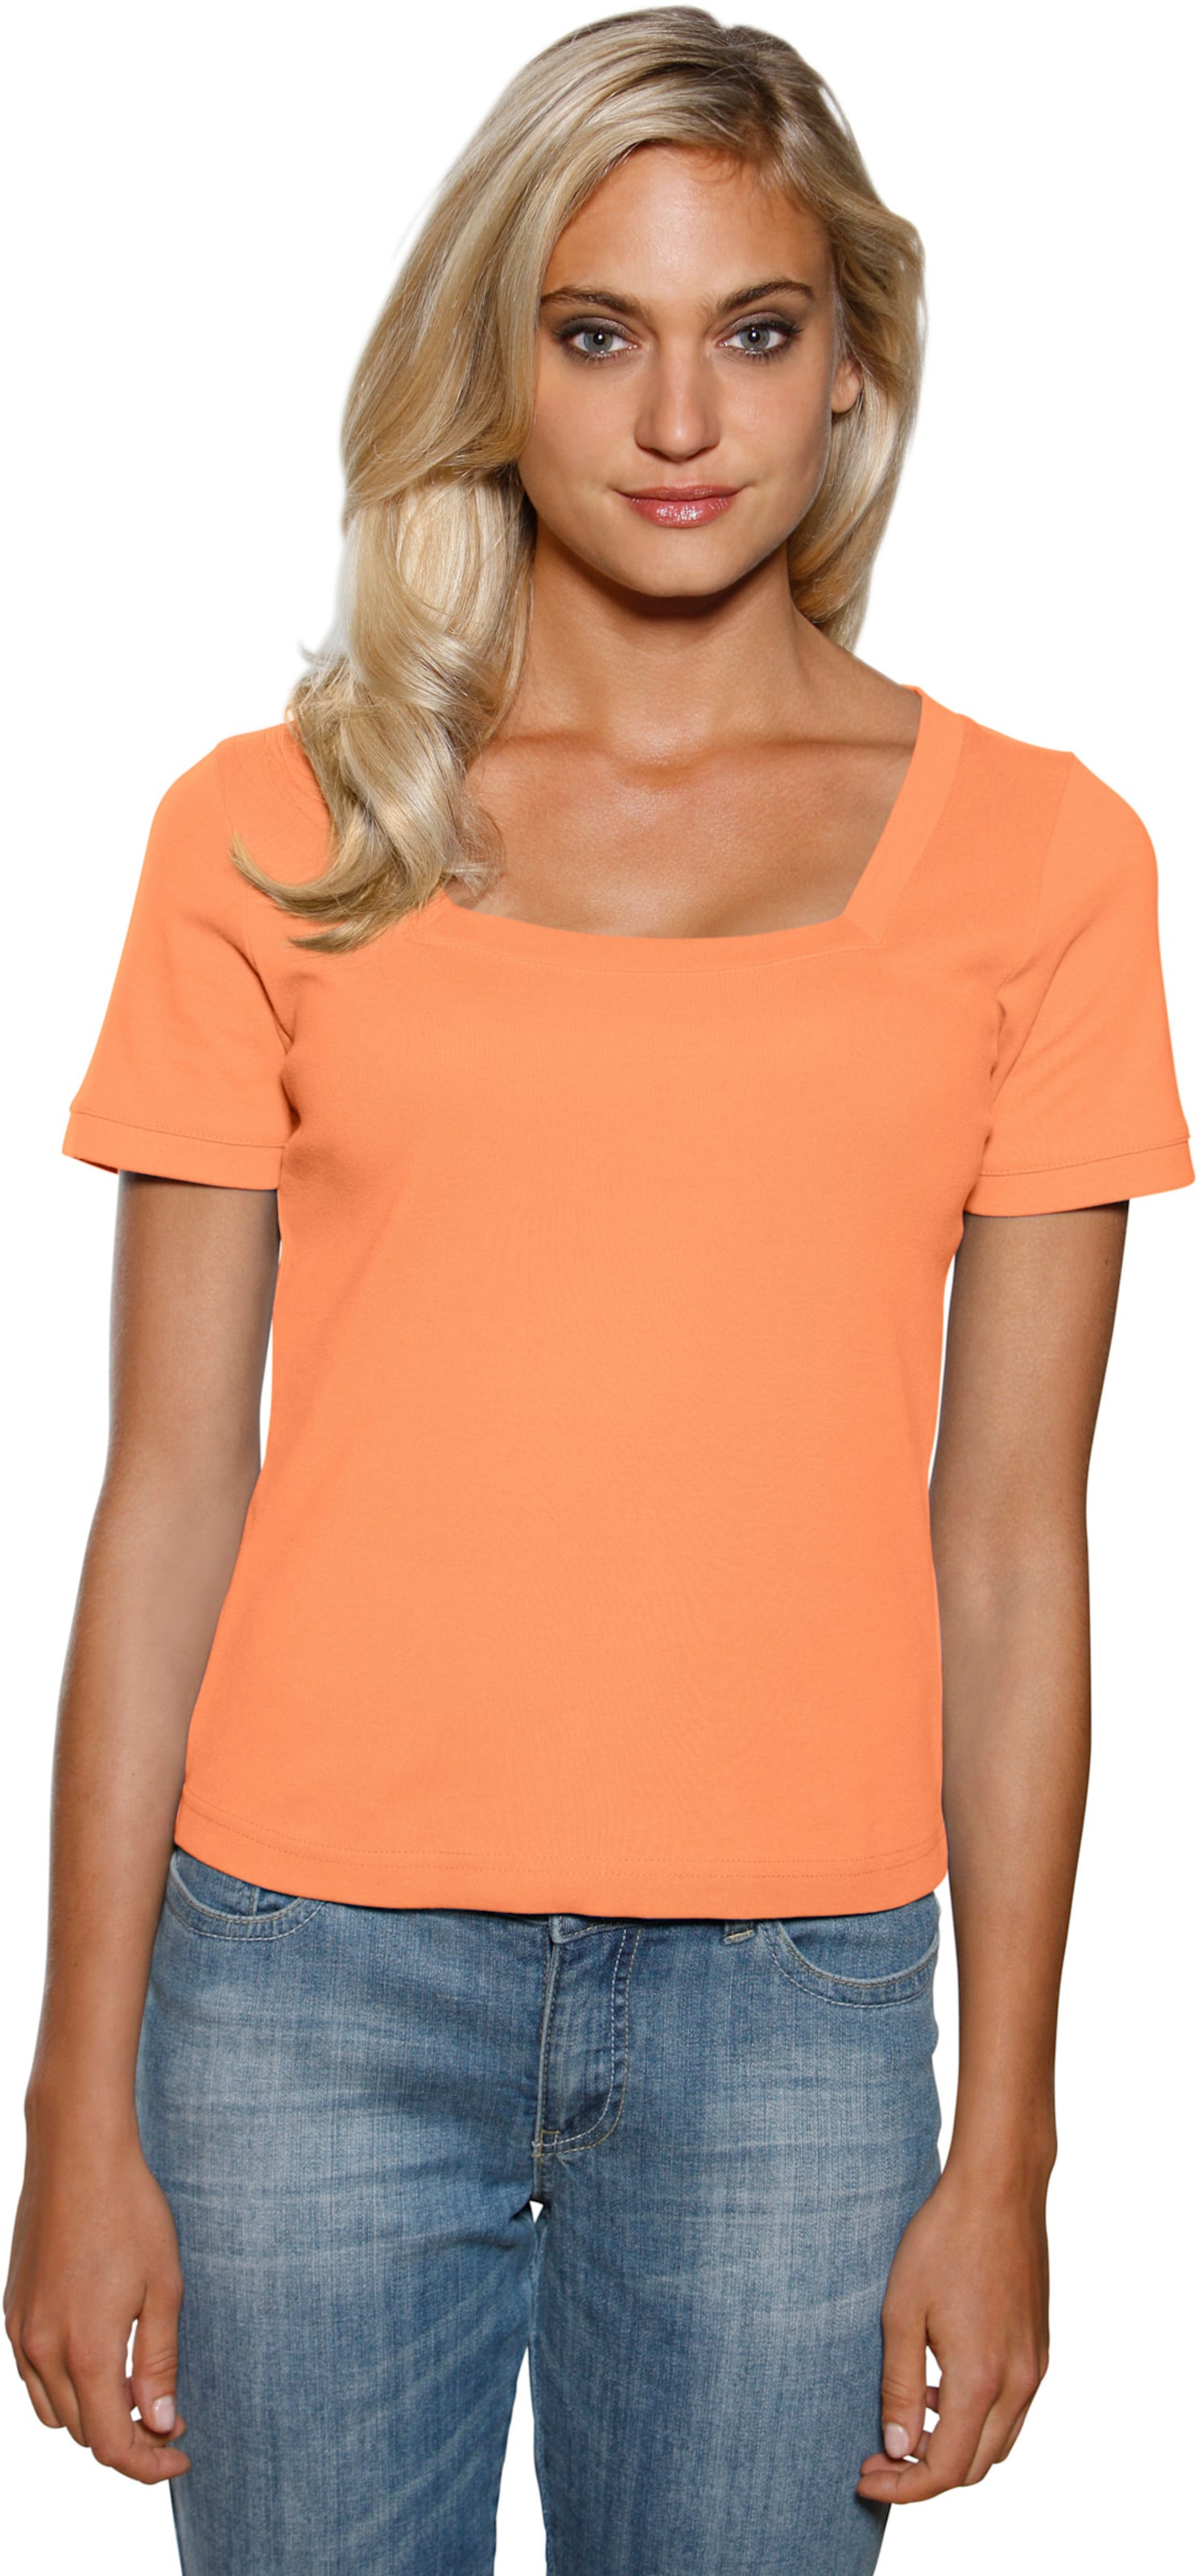 Witt Damen Carré-Shirt, orange